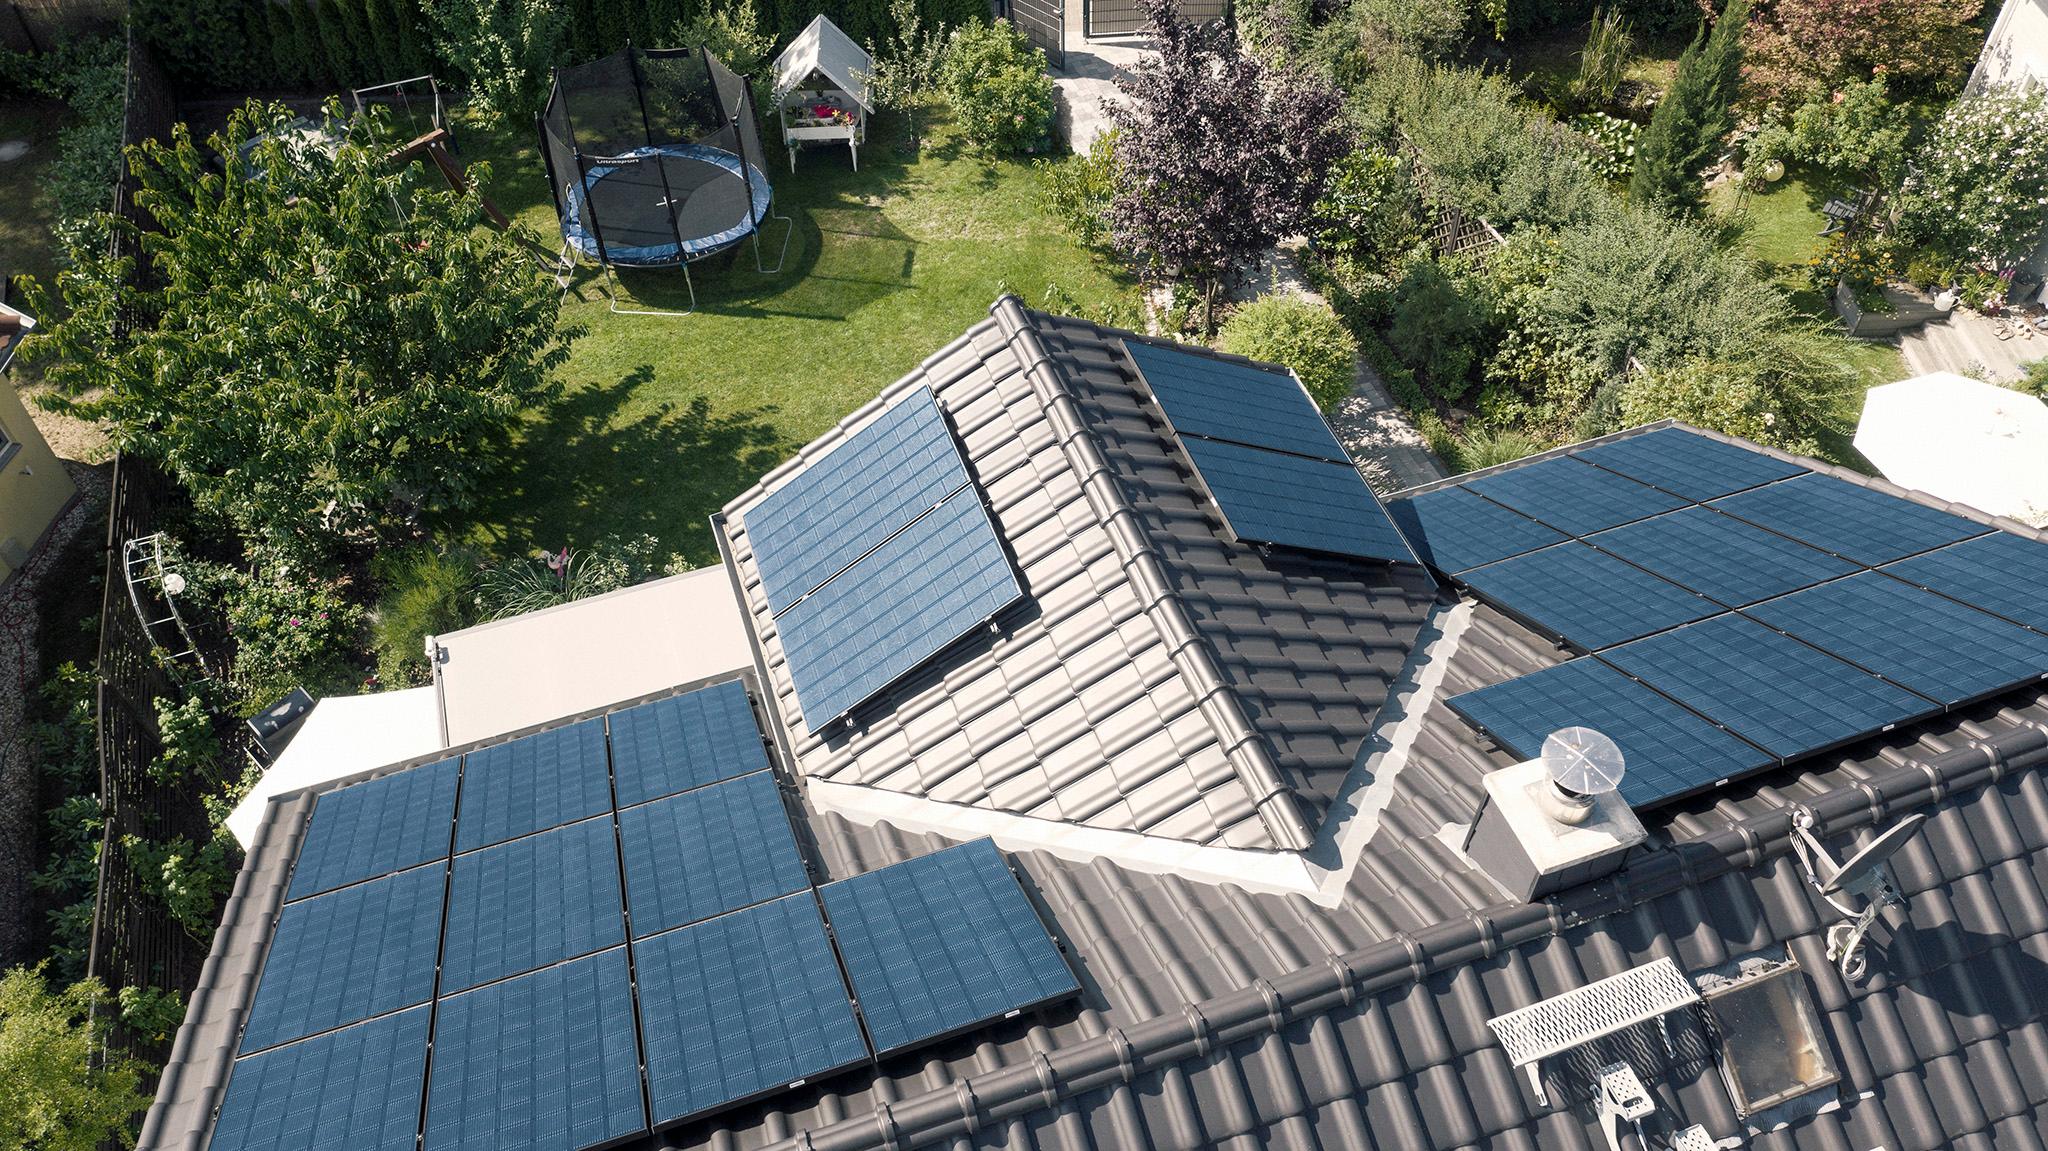 Solaranlage auf dem Dach - Schwarmbatterie Erfahrungen 